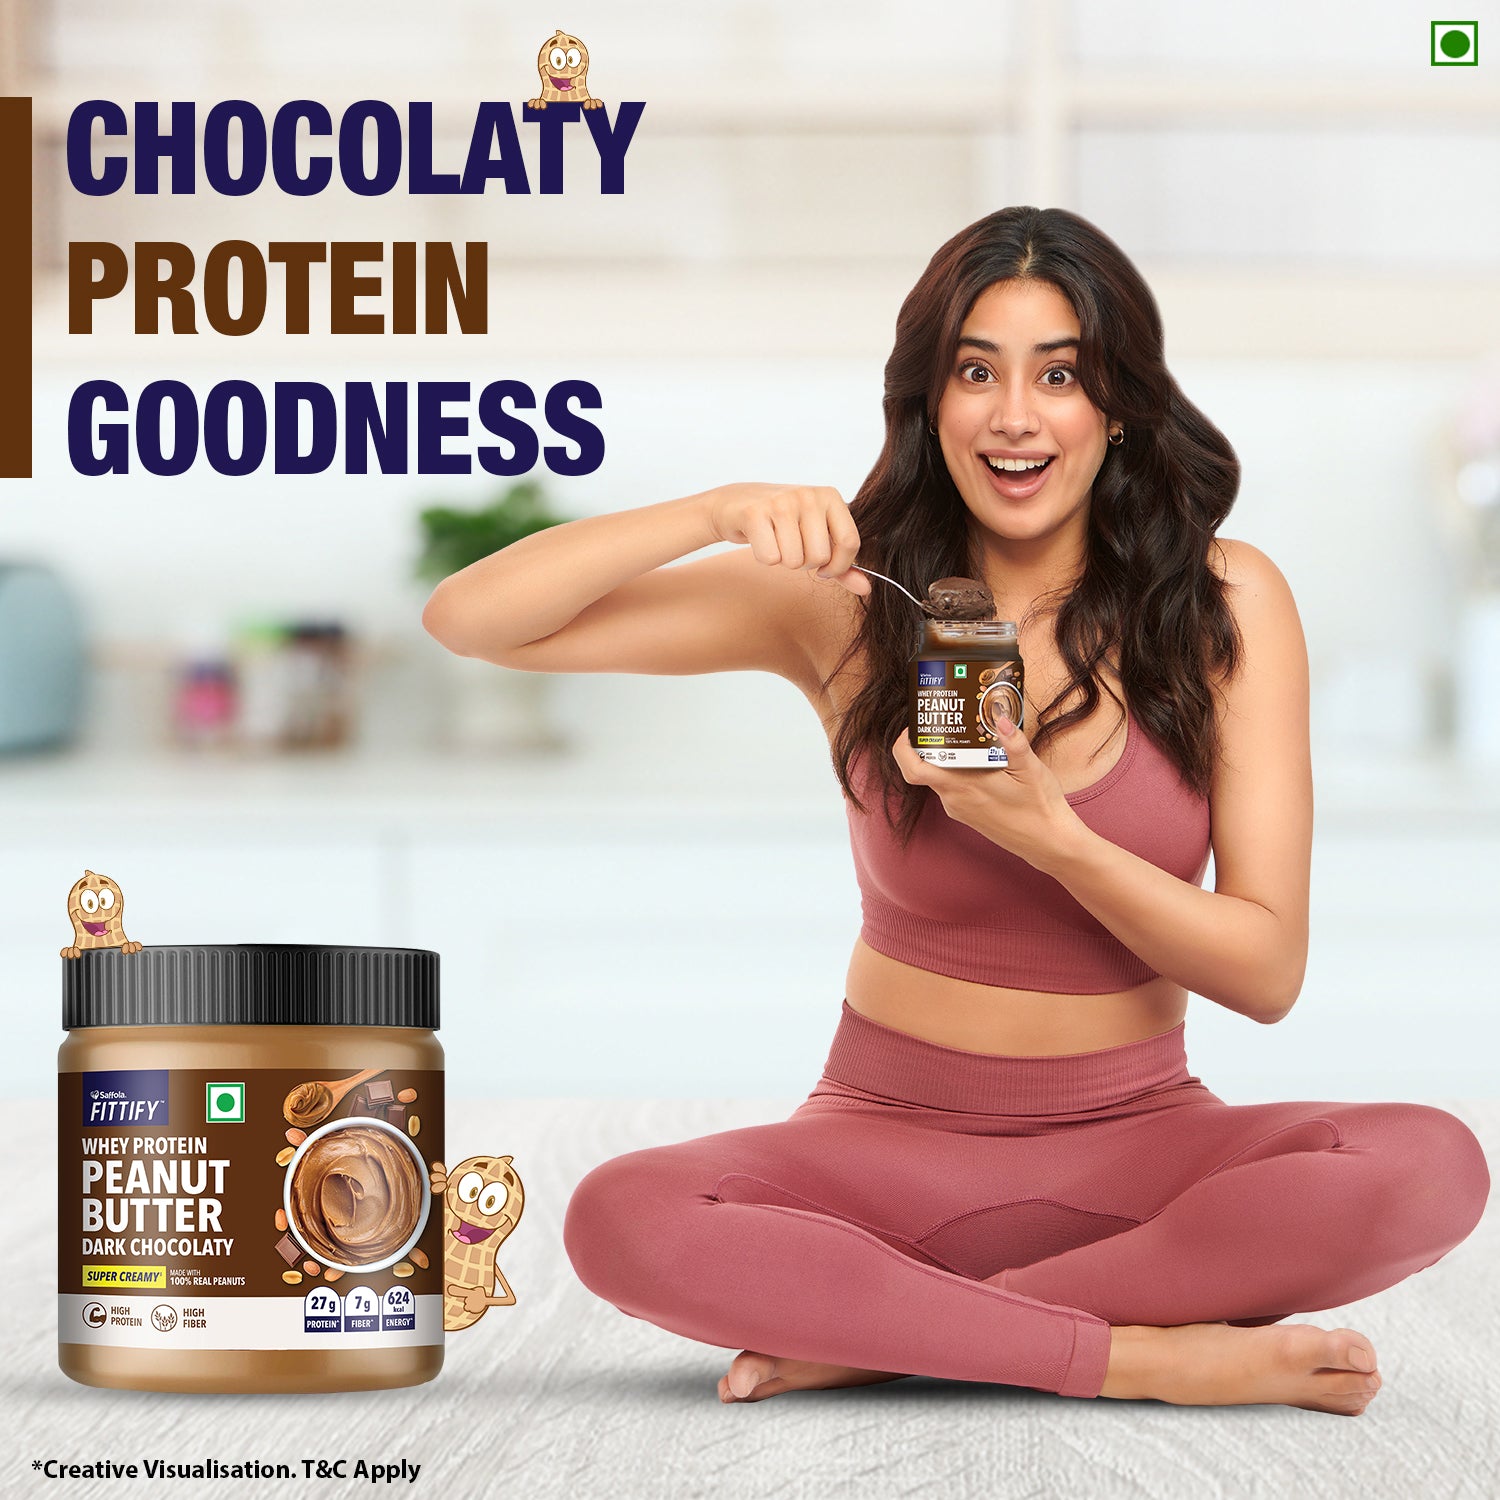 Saffola Fittify Whey Protein - Dark Chocolaty - Peanut Butter